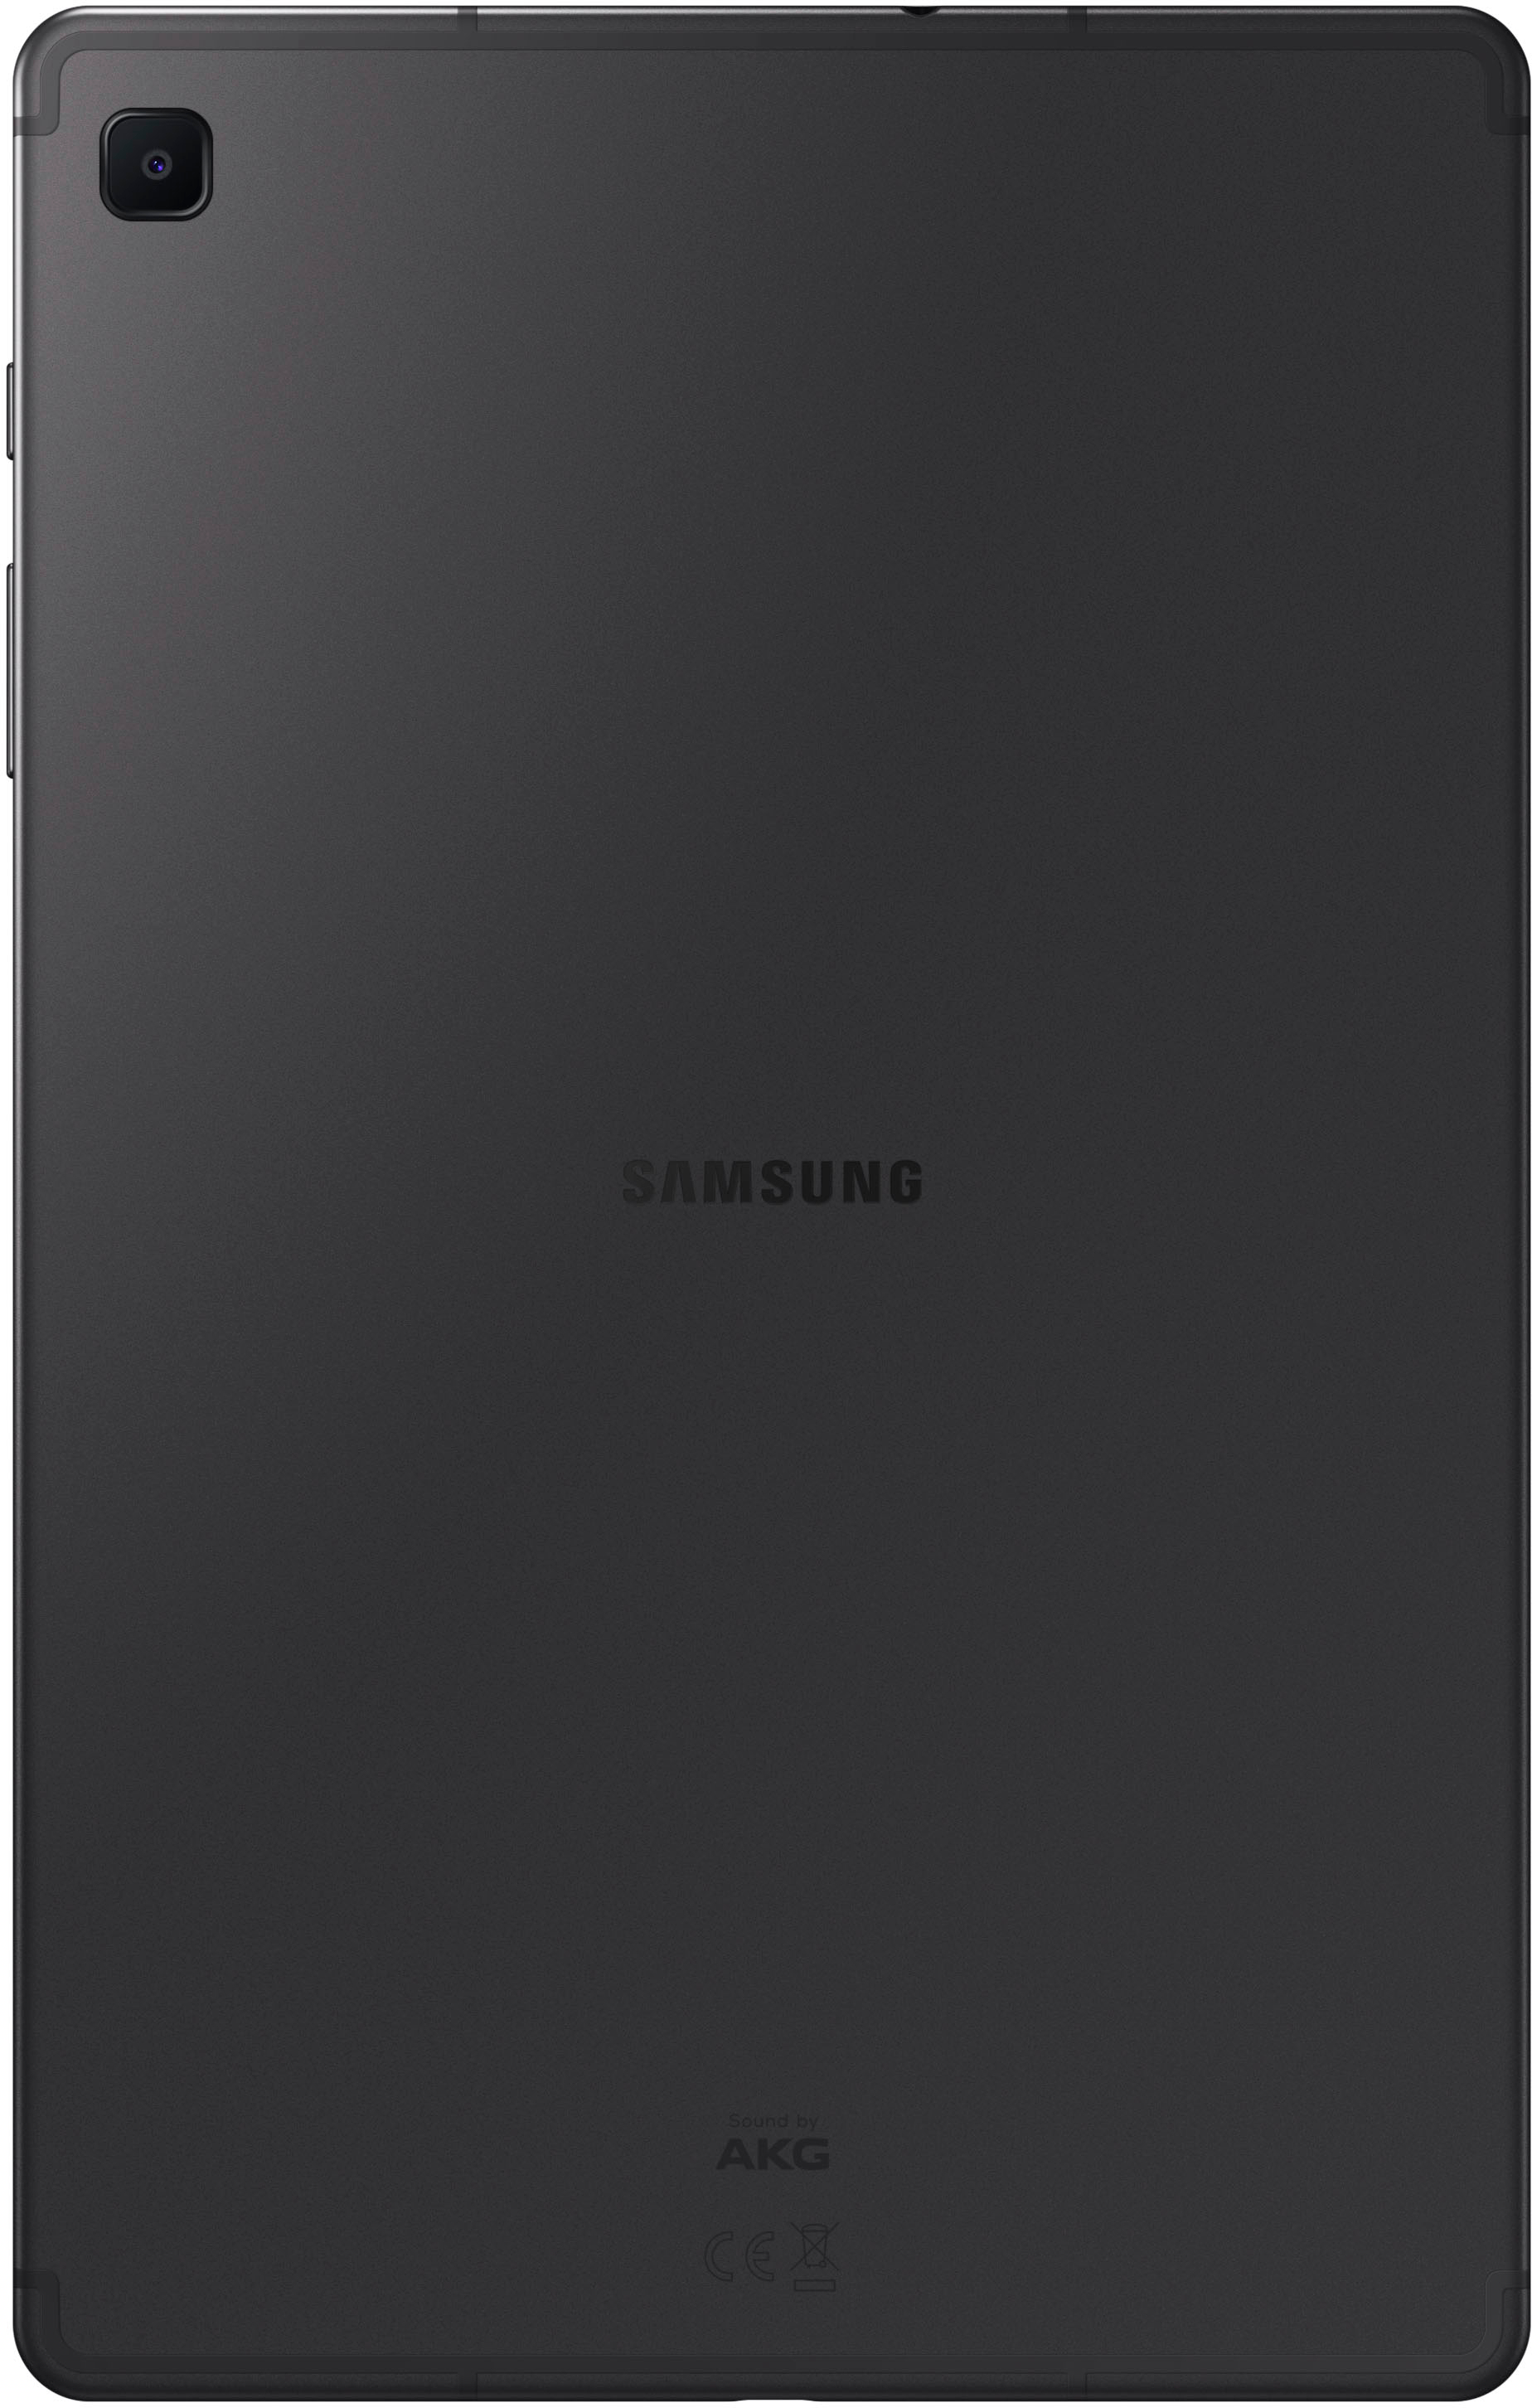 Samsung Galaxy Tab S6 Lite 64GB Gray